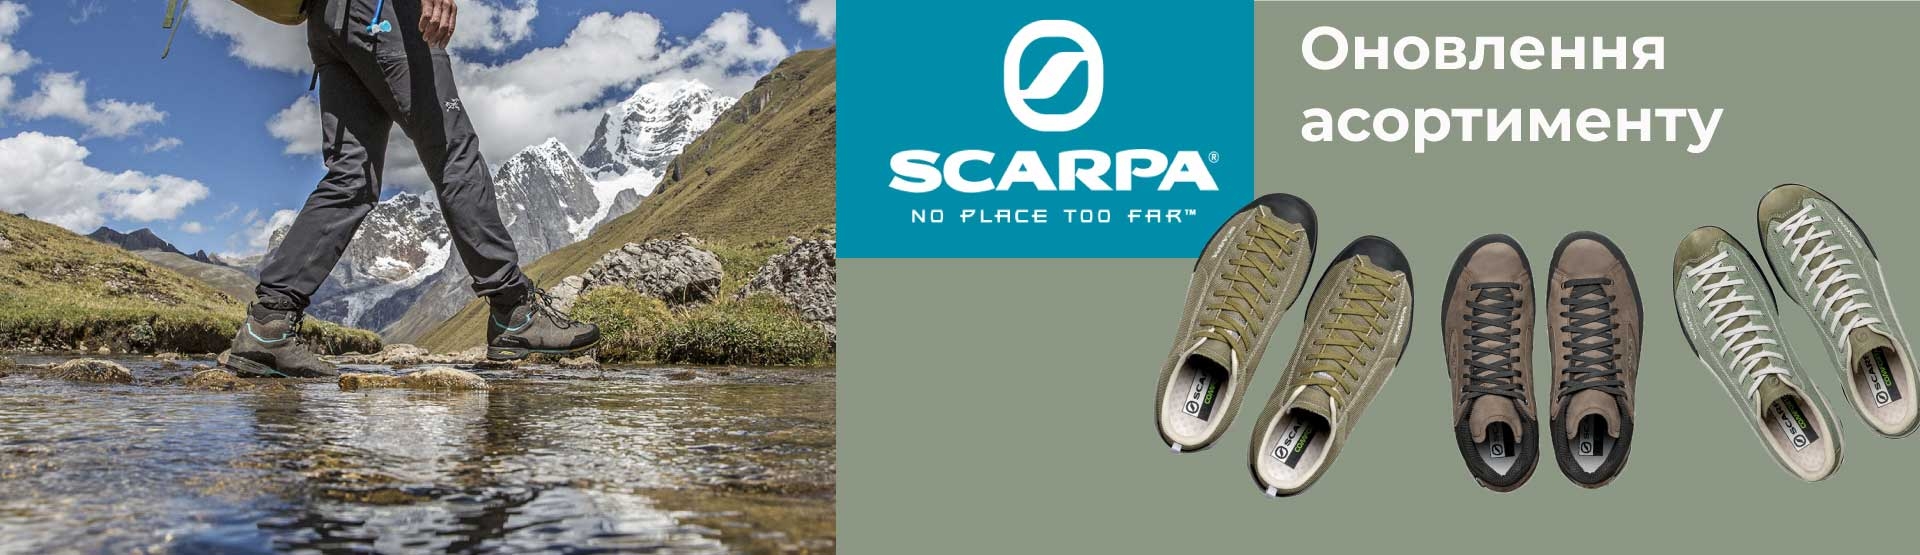 Оновлення асортименту Scarpa